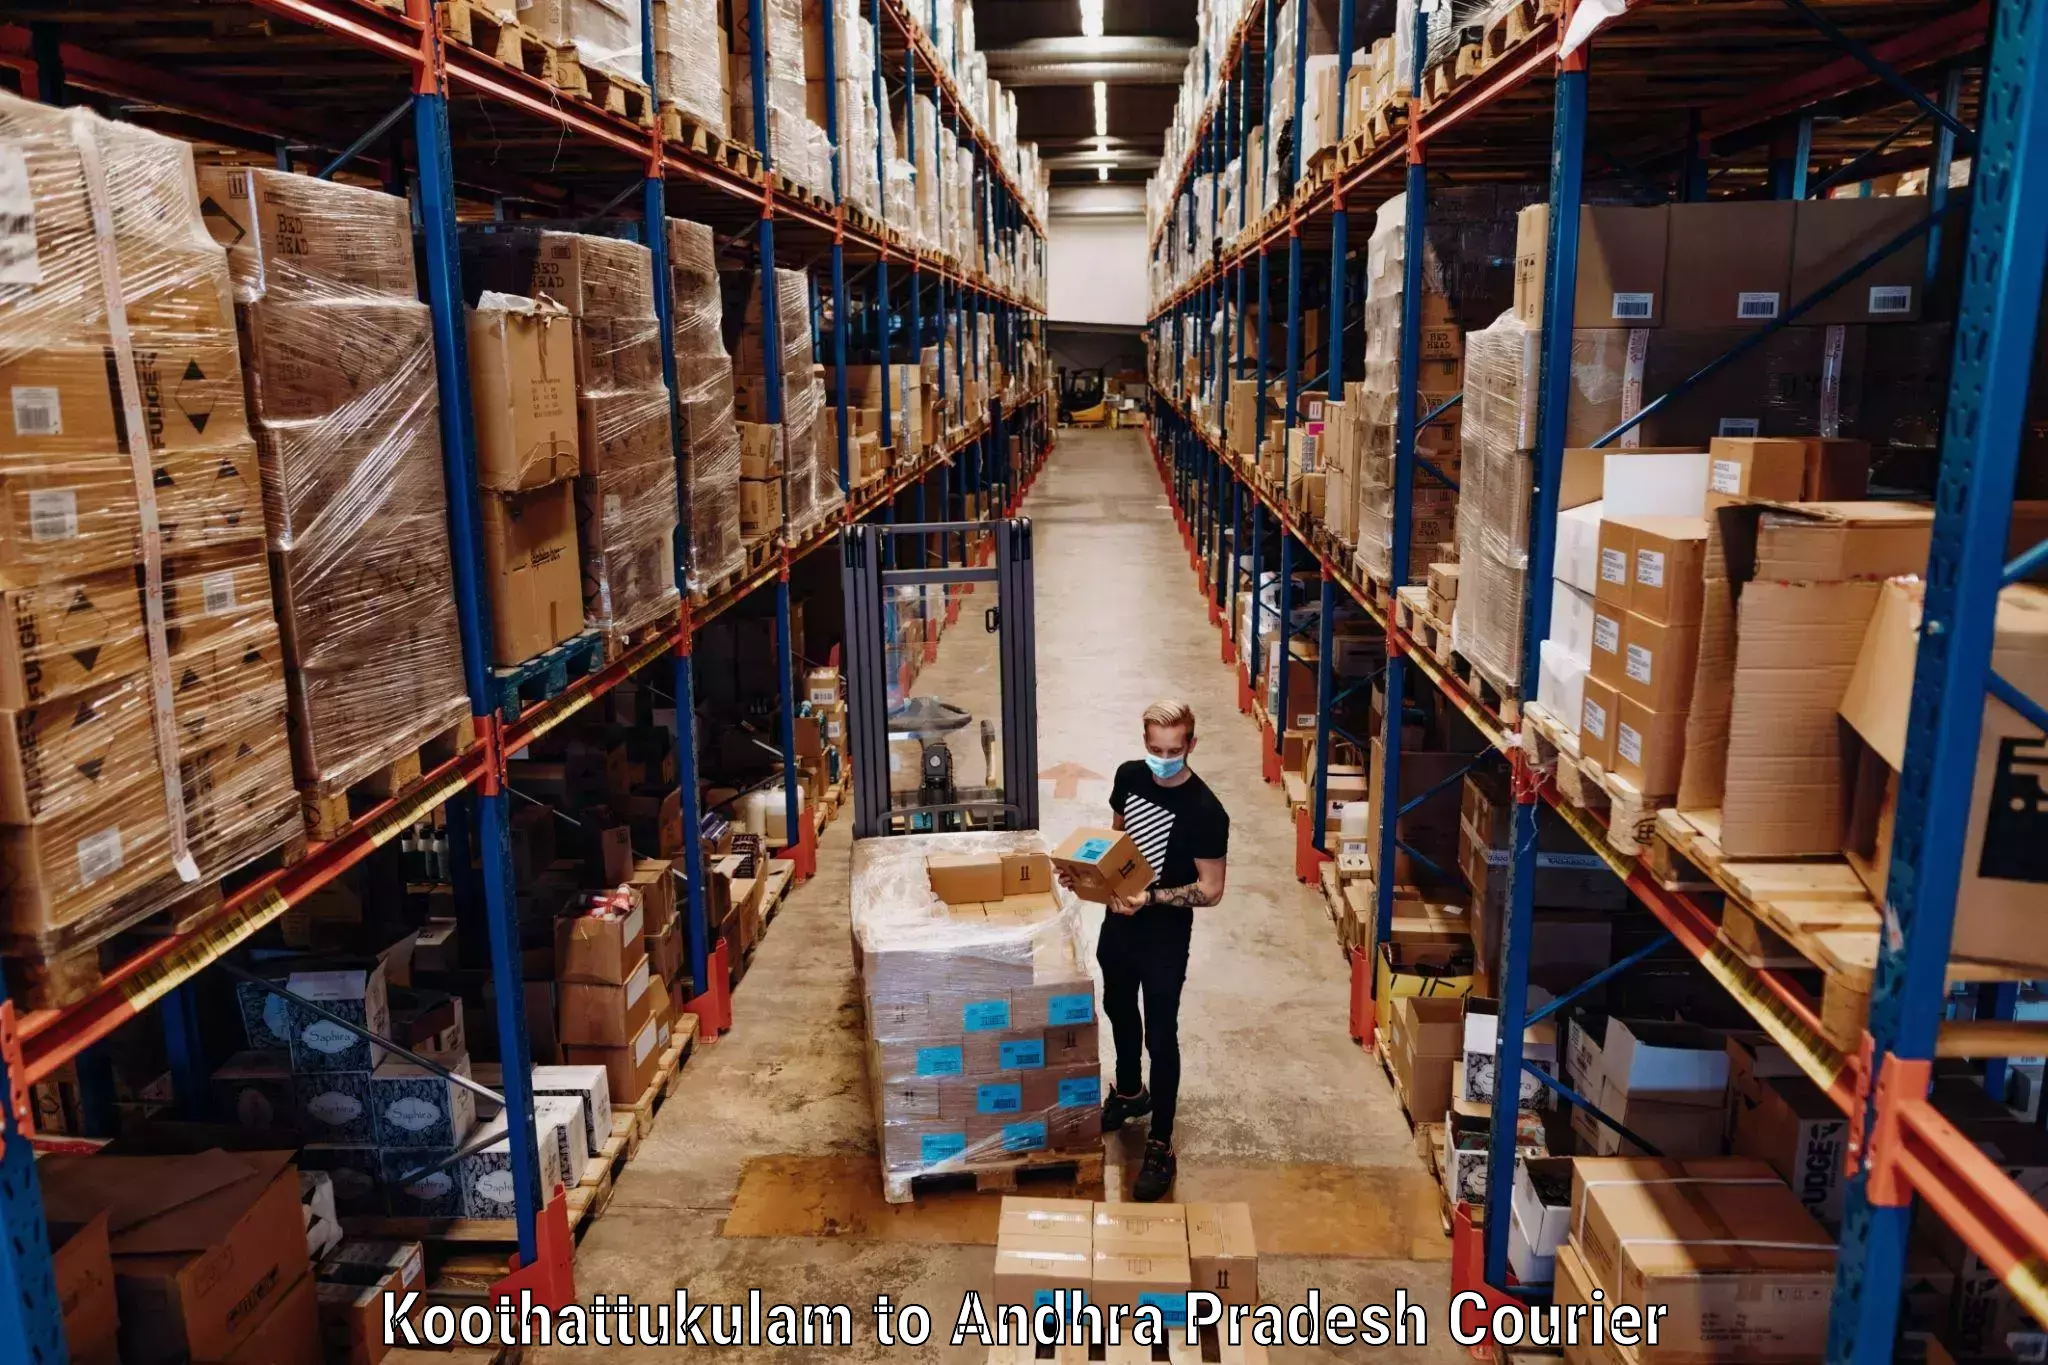 Luggage delivery rates Koothattukulam to Kudair